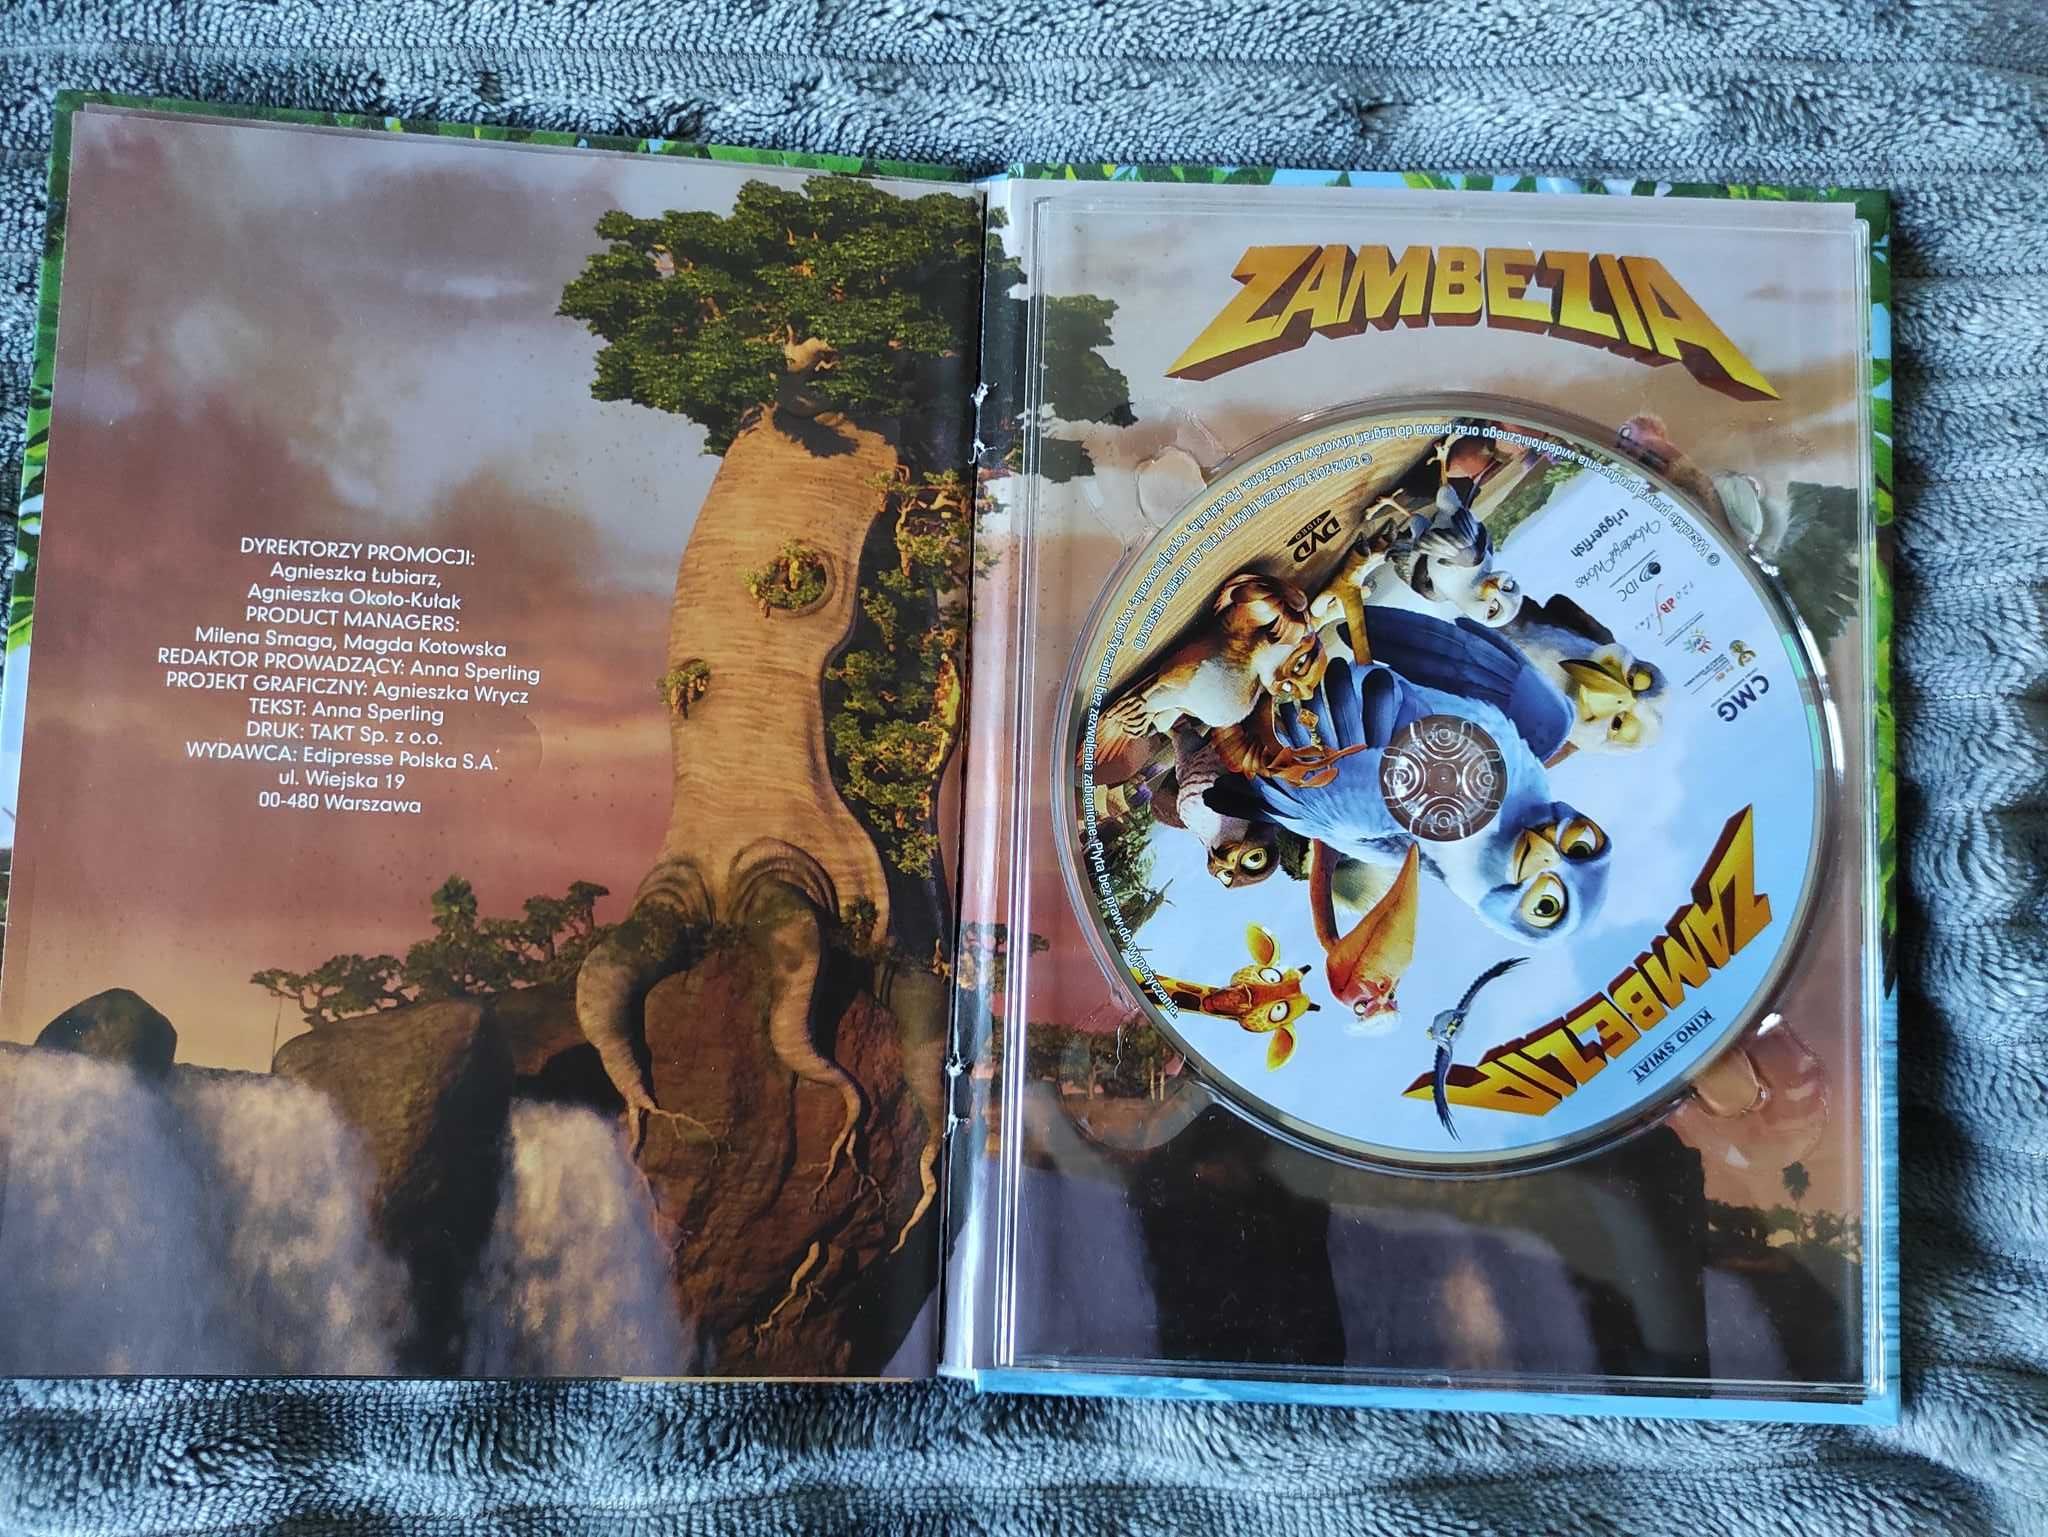 bajka Zambezia płyta DVD + książka